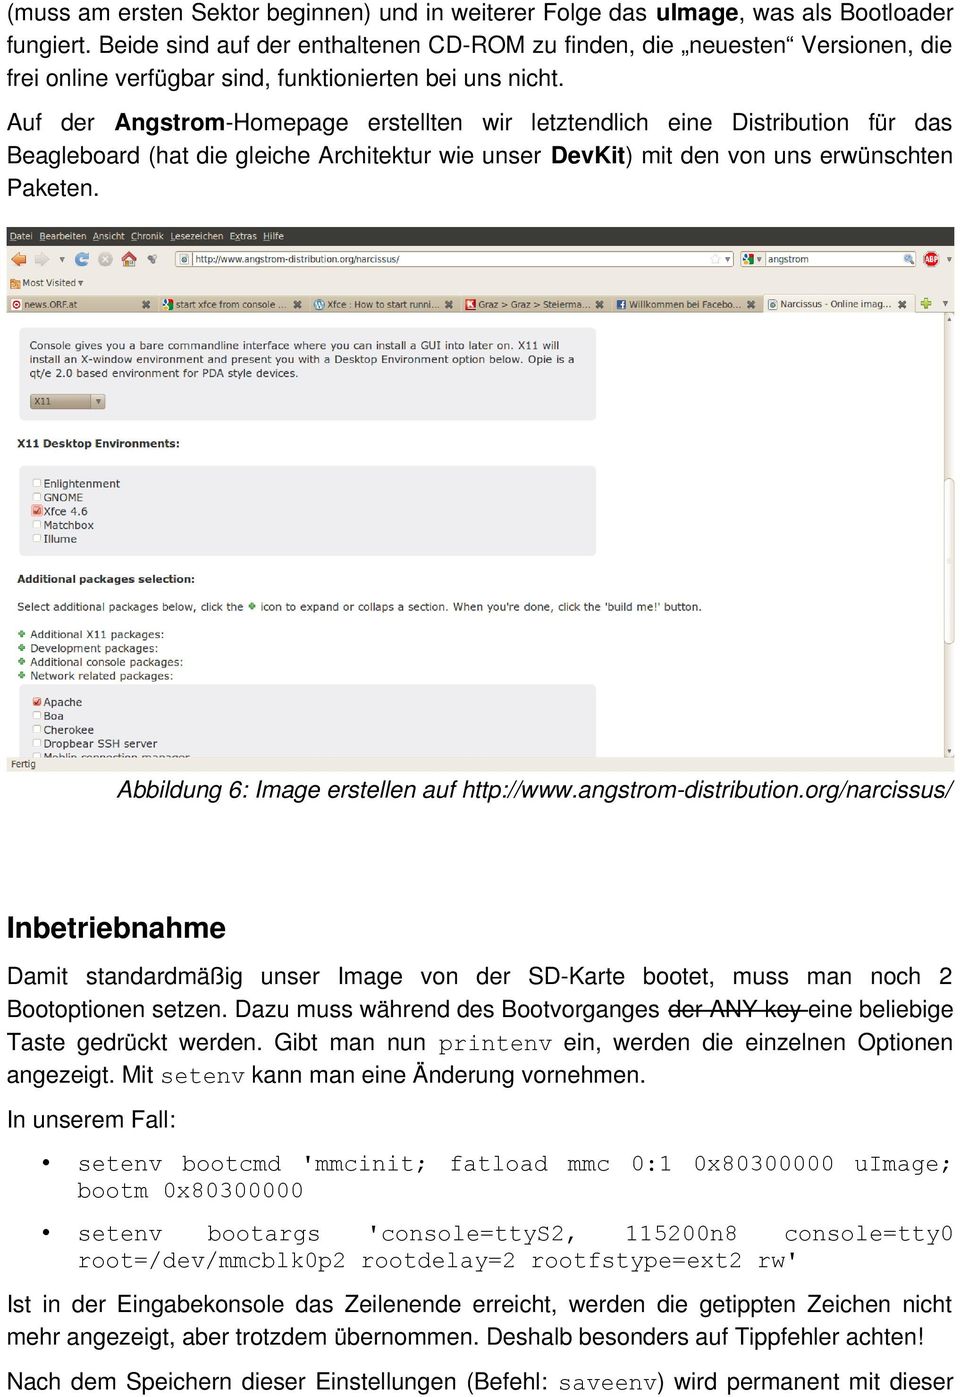 Auf der Angstrom-Homepage erstellten wir letztendlich eine Distribution für das Beagleboard (hat die gleiche Architektur wie unser DevKit) mit den von uns erwünschten Paketen.